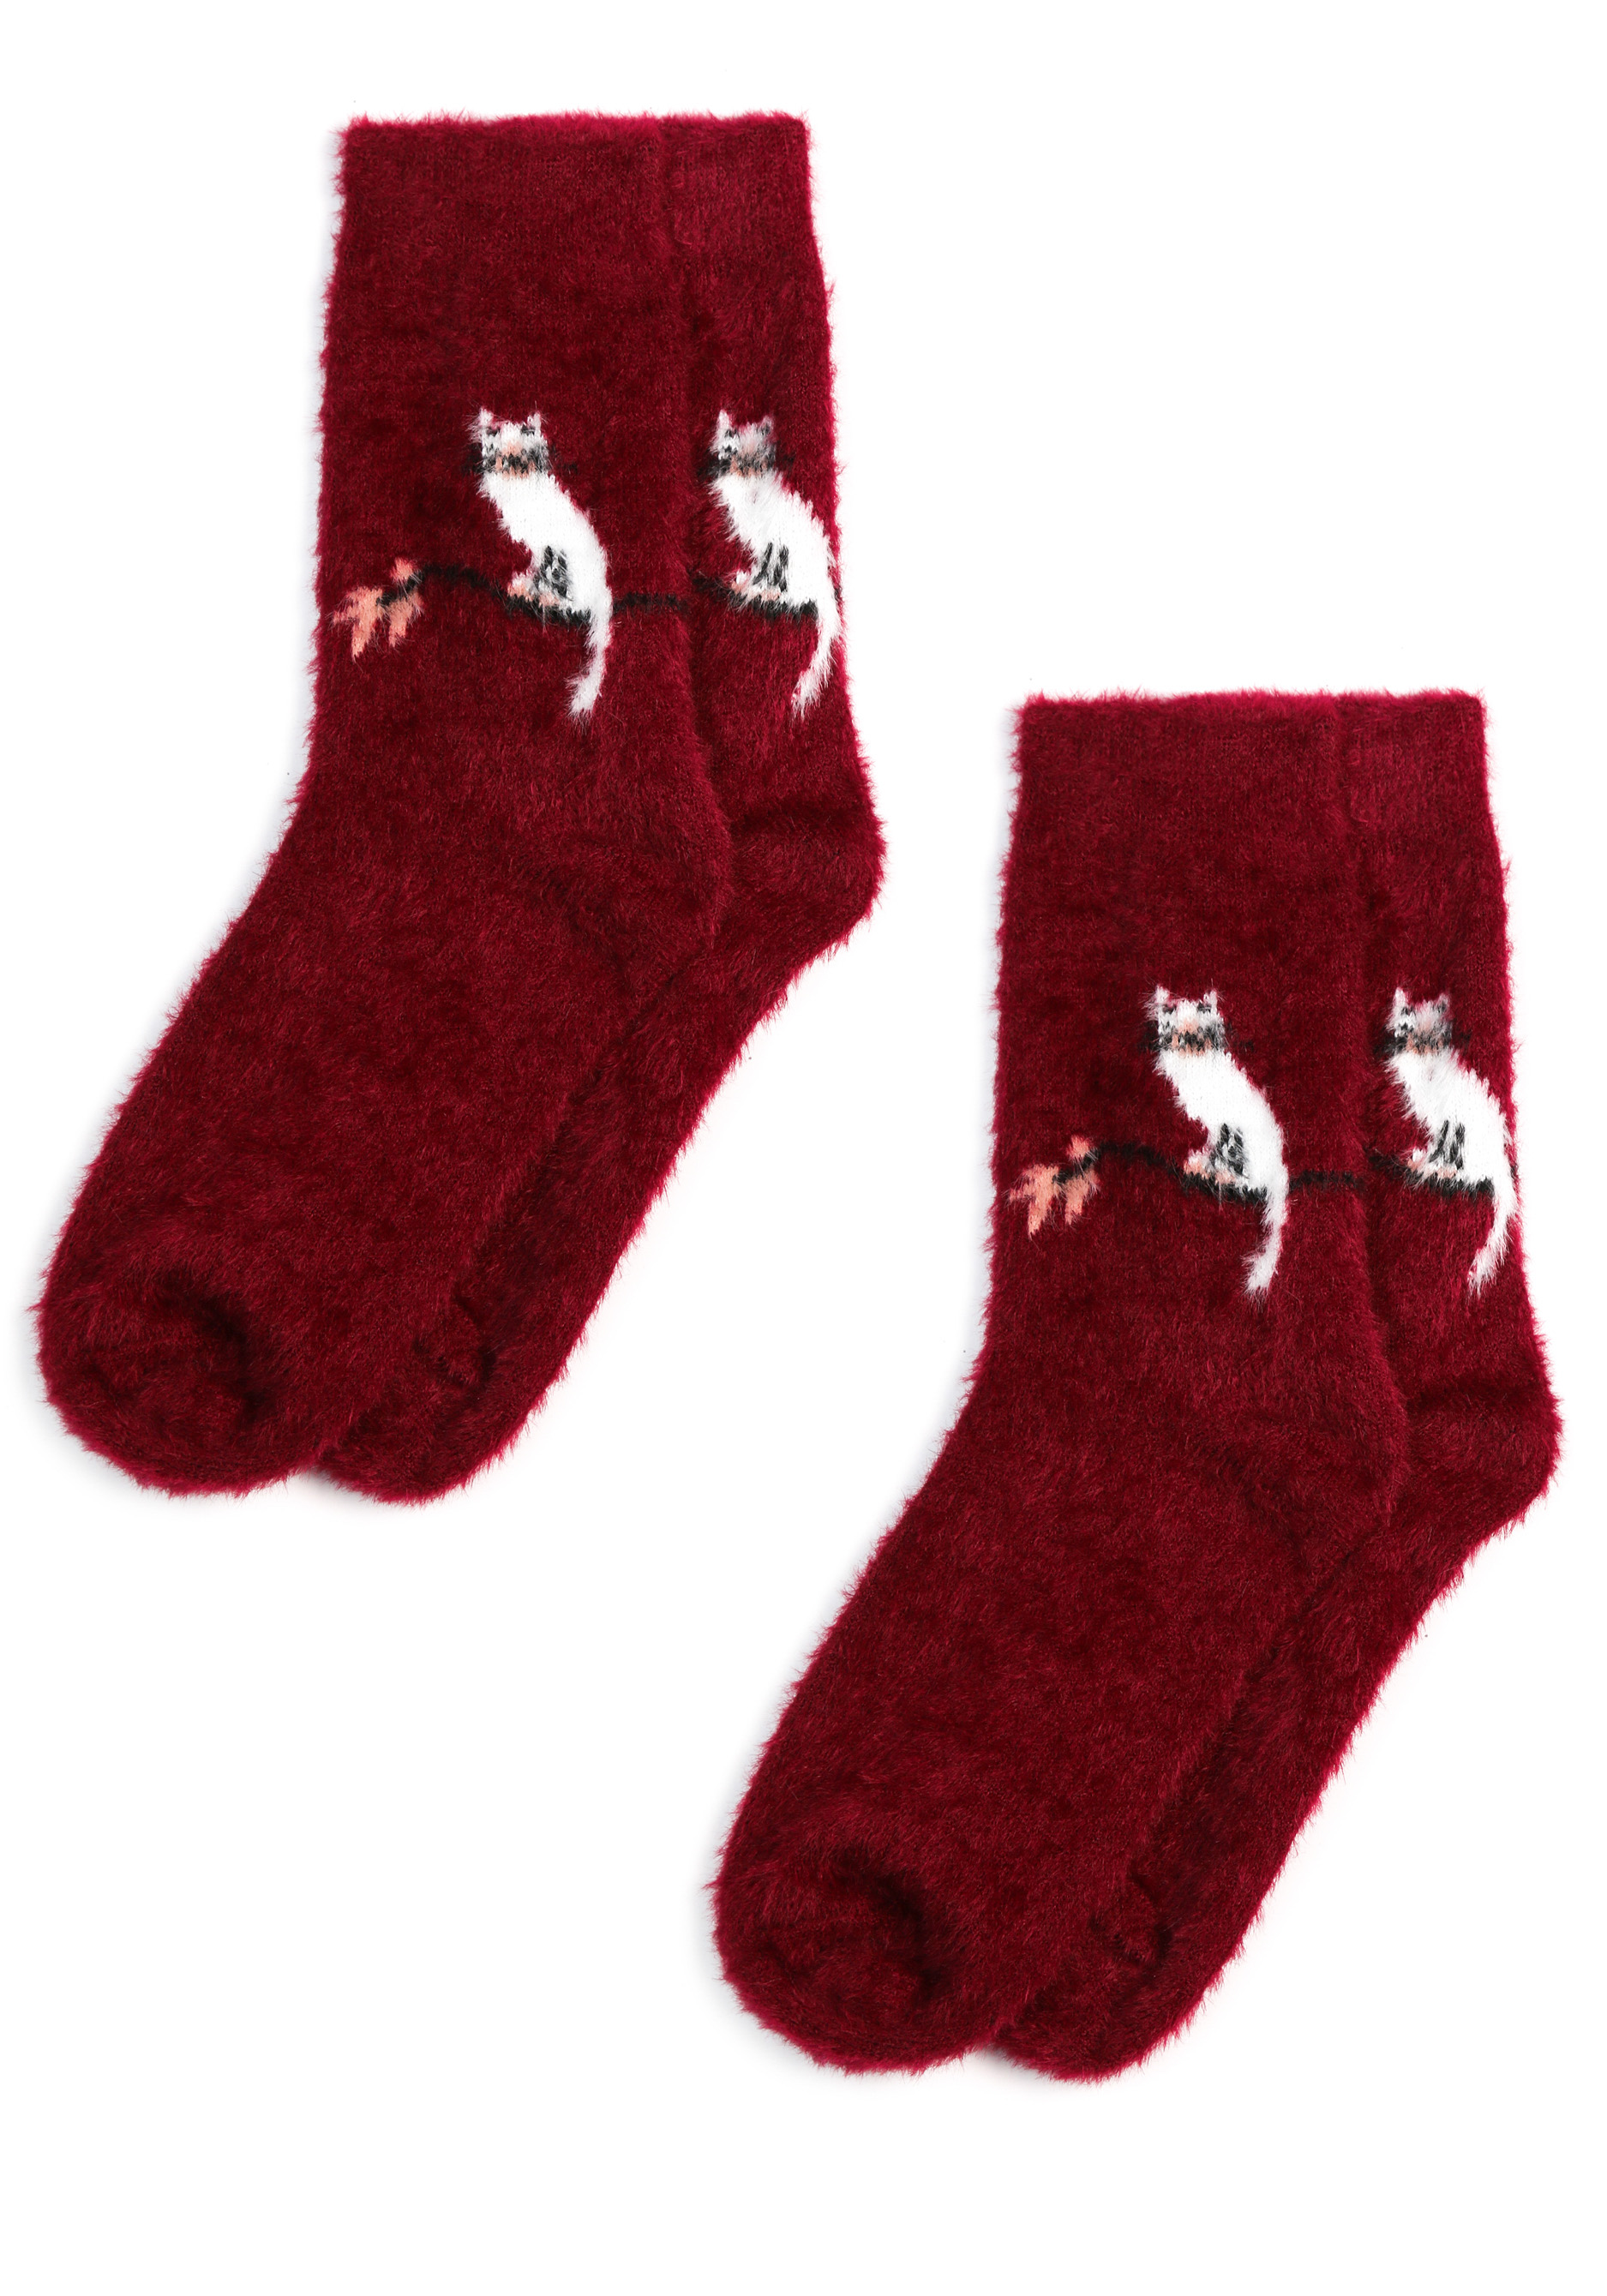 Комплект носков из шерсти норки, 2 пары, цвет черный, размер 37-41 - фото 1